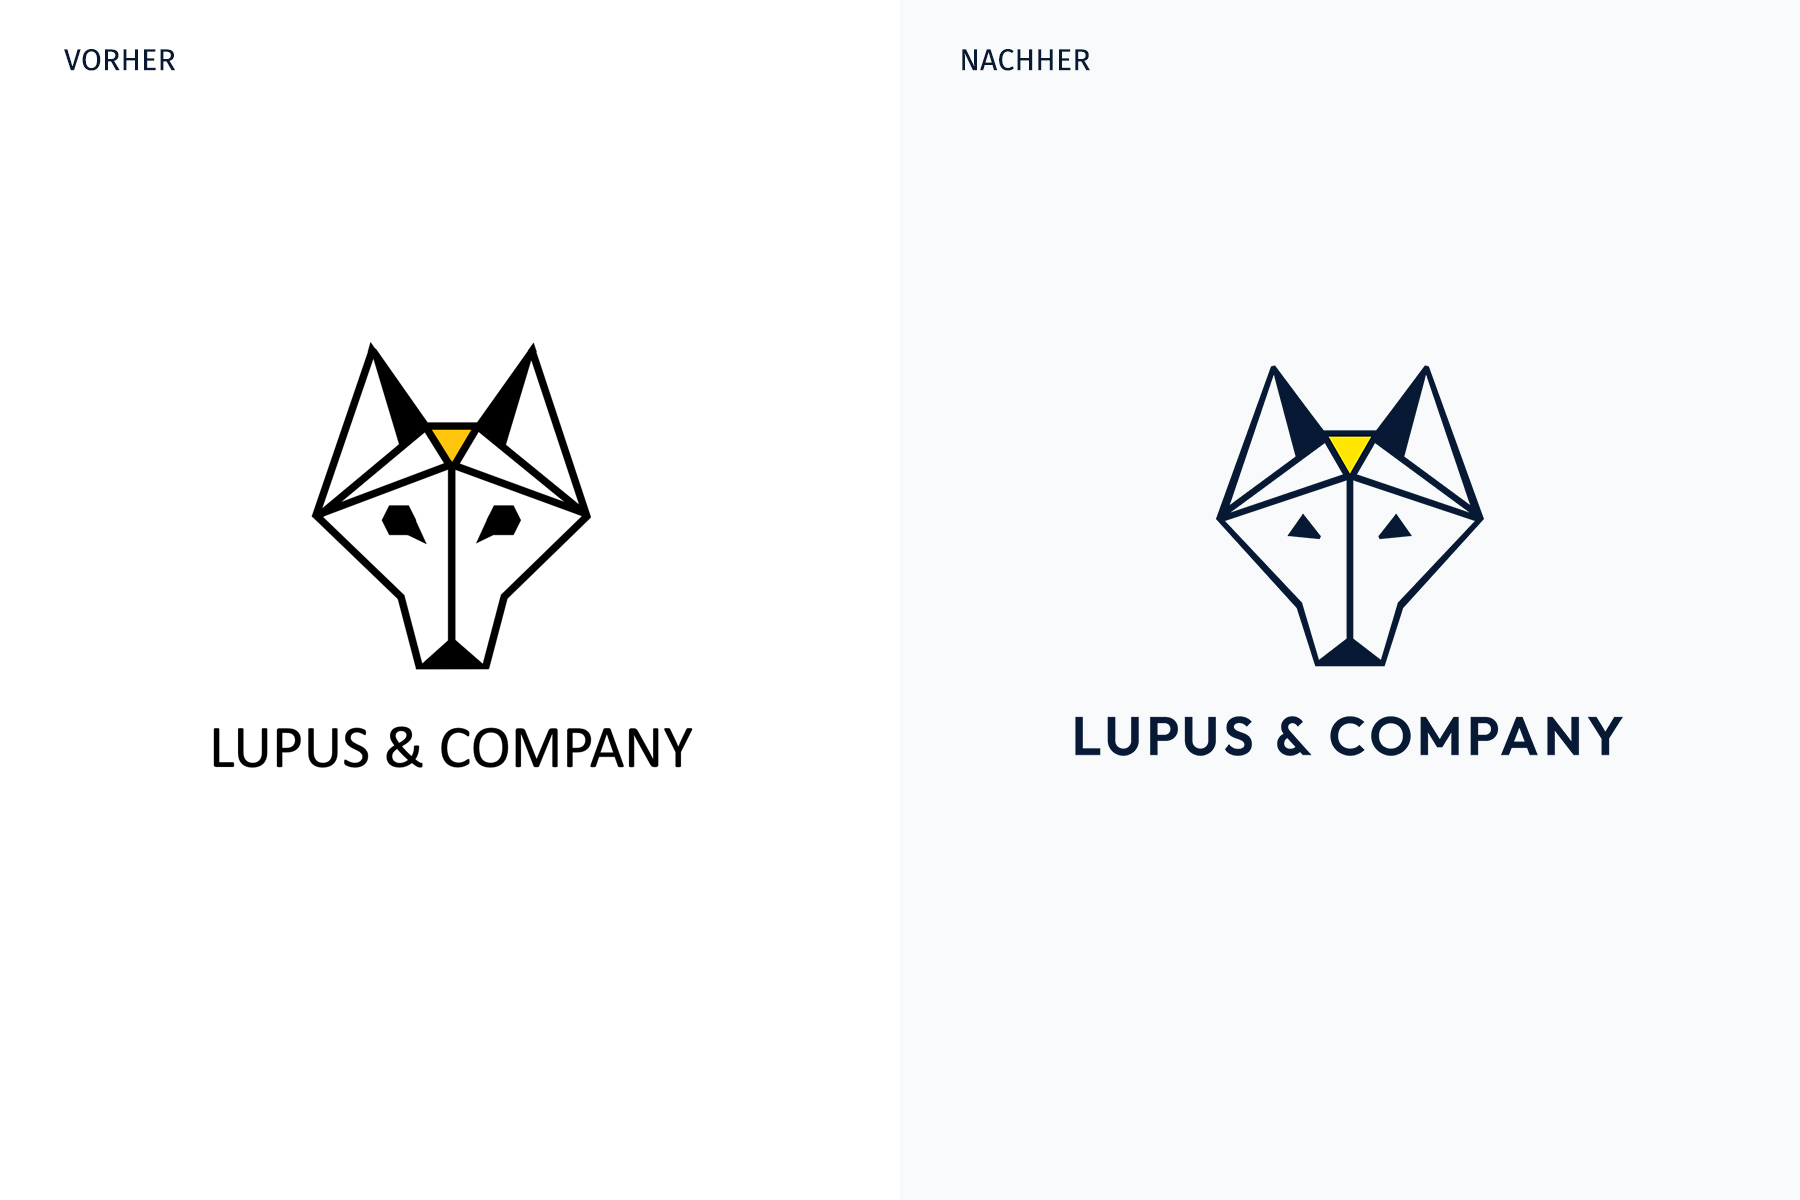 Vorher-Nachher-Vergleich der Logos